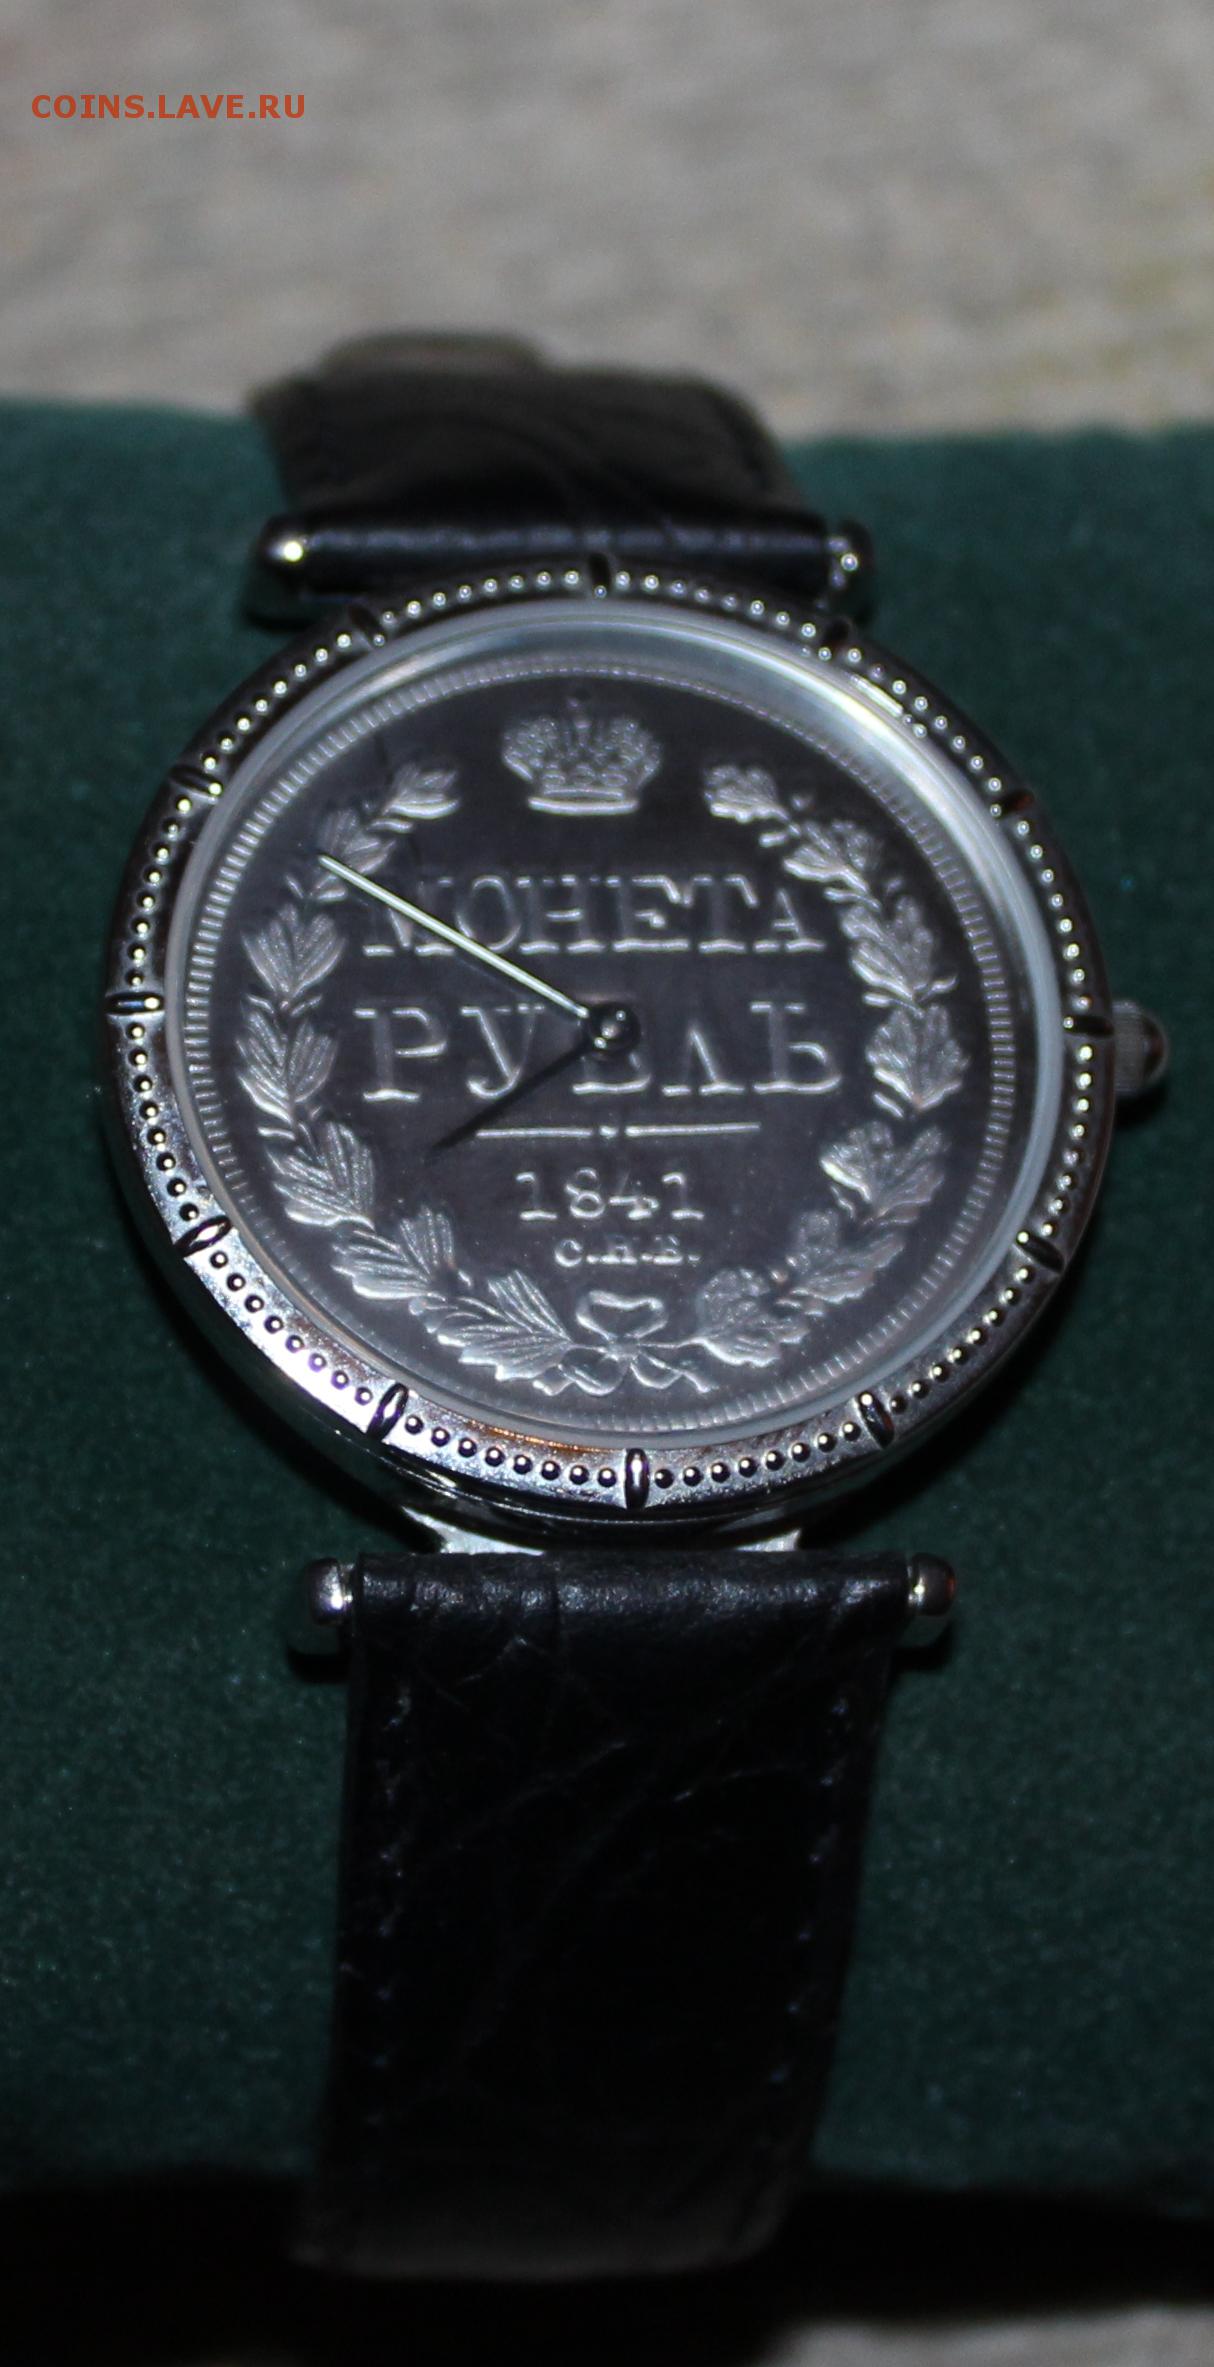 Юбилейные часы сбербанка. Часы юбилейные Сбербанк. Сбербанк России 160 лет часы. Часы от Сбербанка наручные. Часы 170 лет Сбербанку.